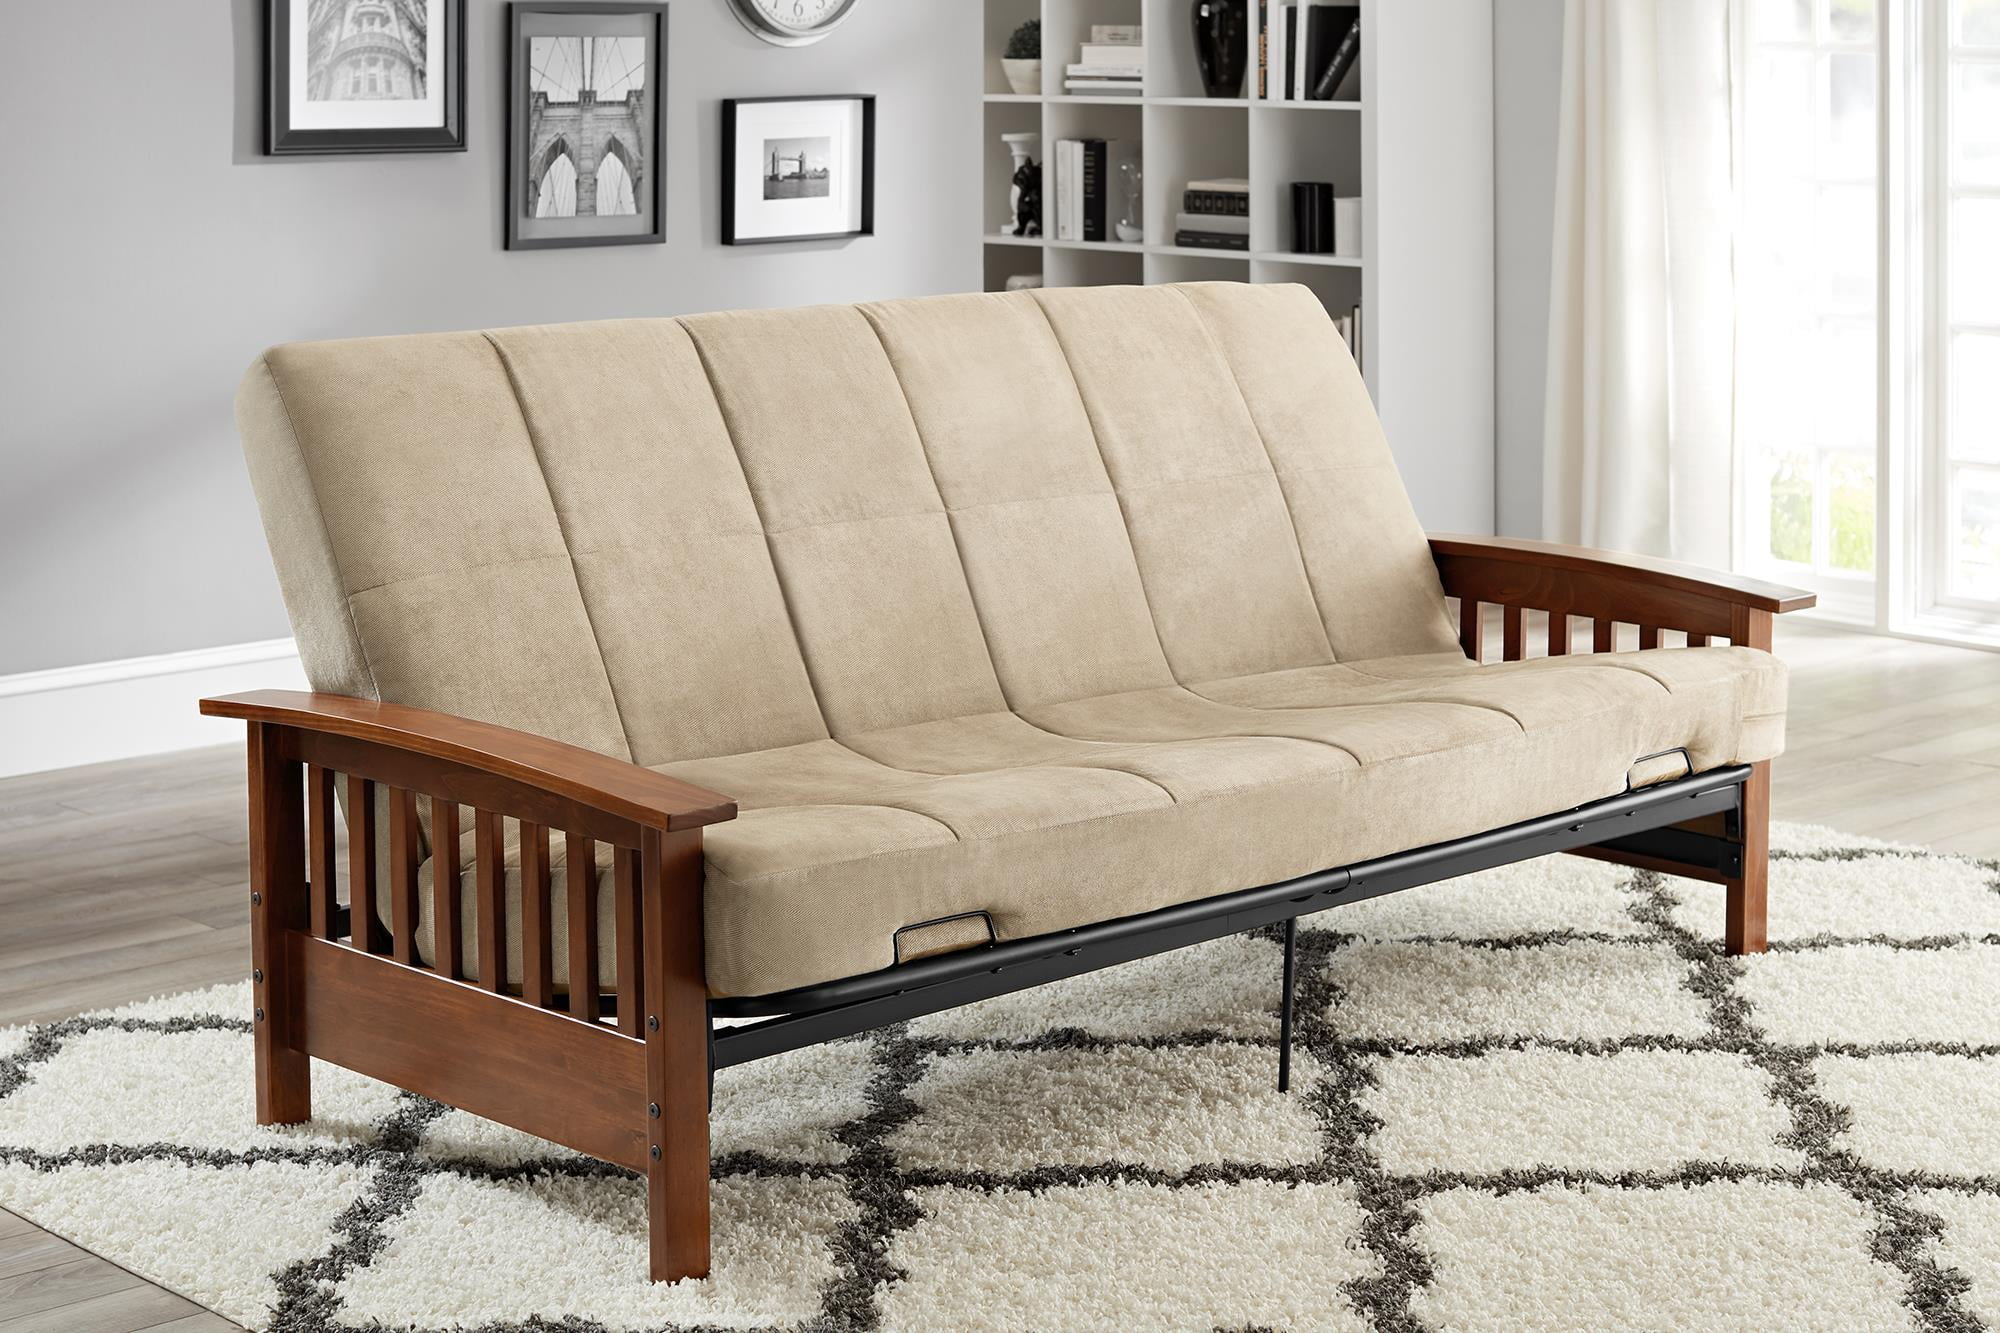 wooden sofa bed mattress